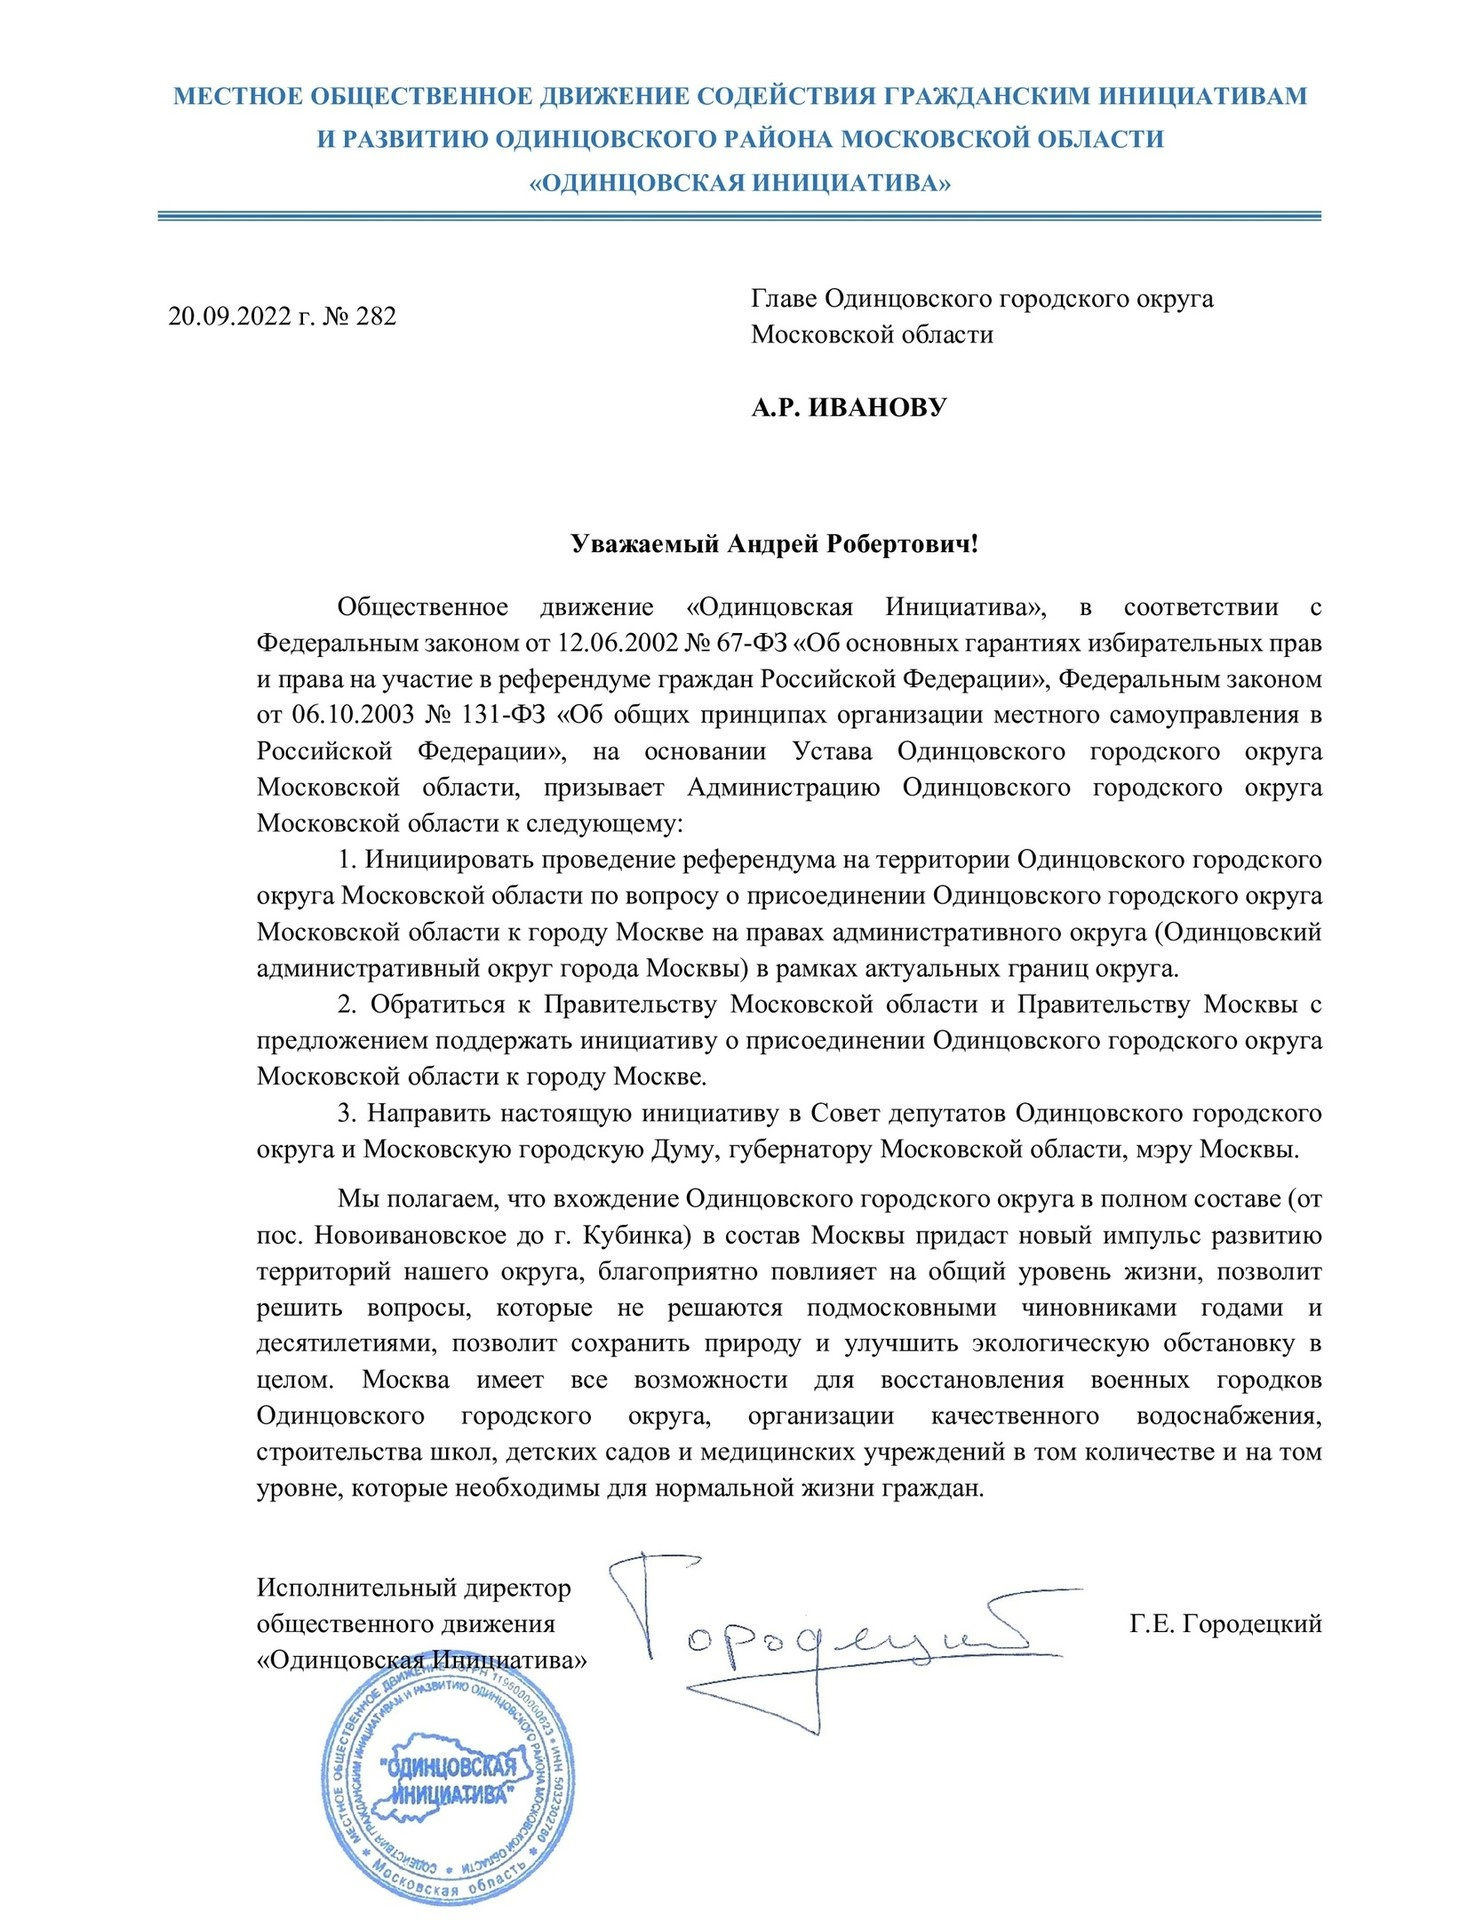 Текст обращения подписал исполнительный директор ОД «Одинцовская Инициатива»